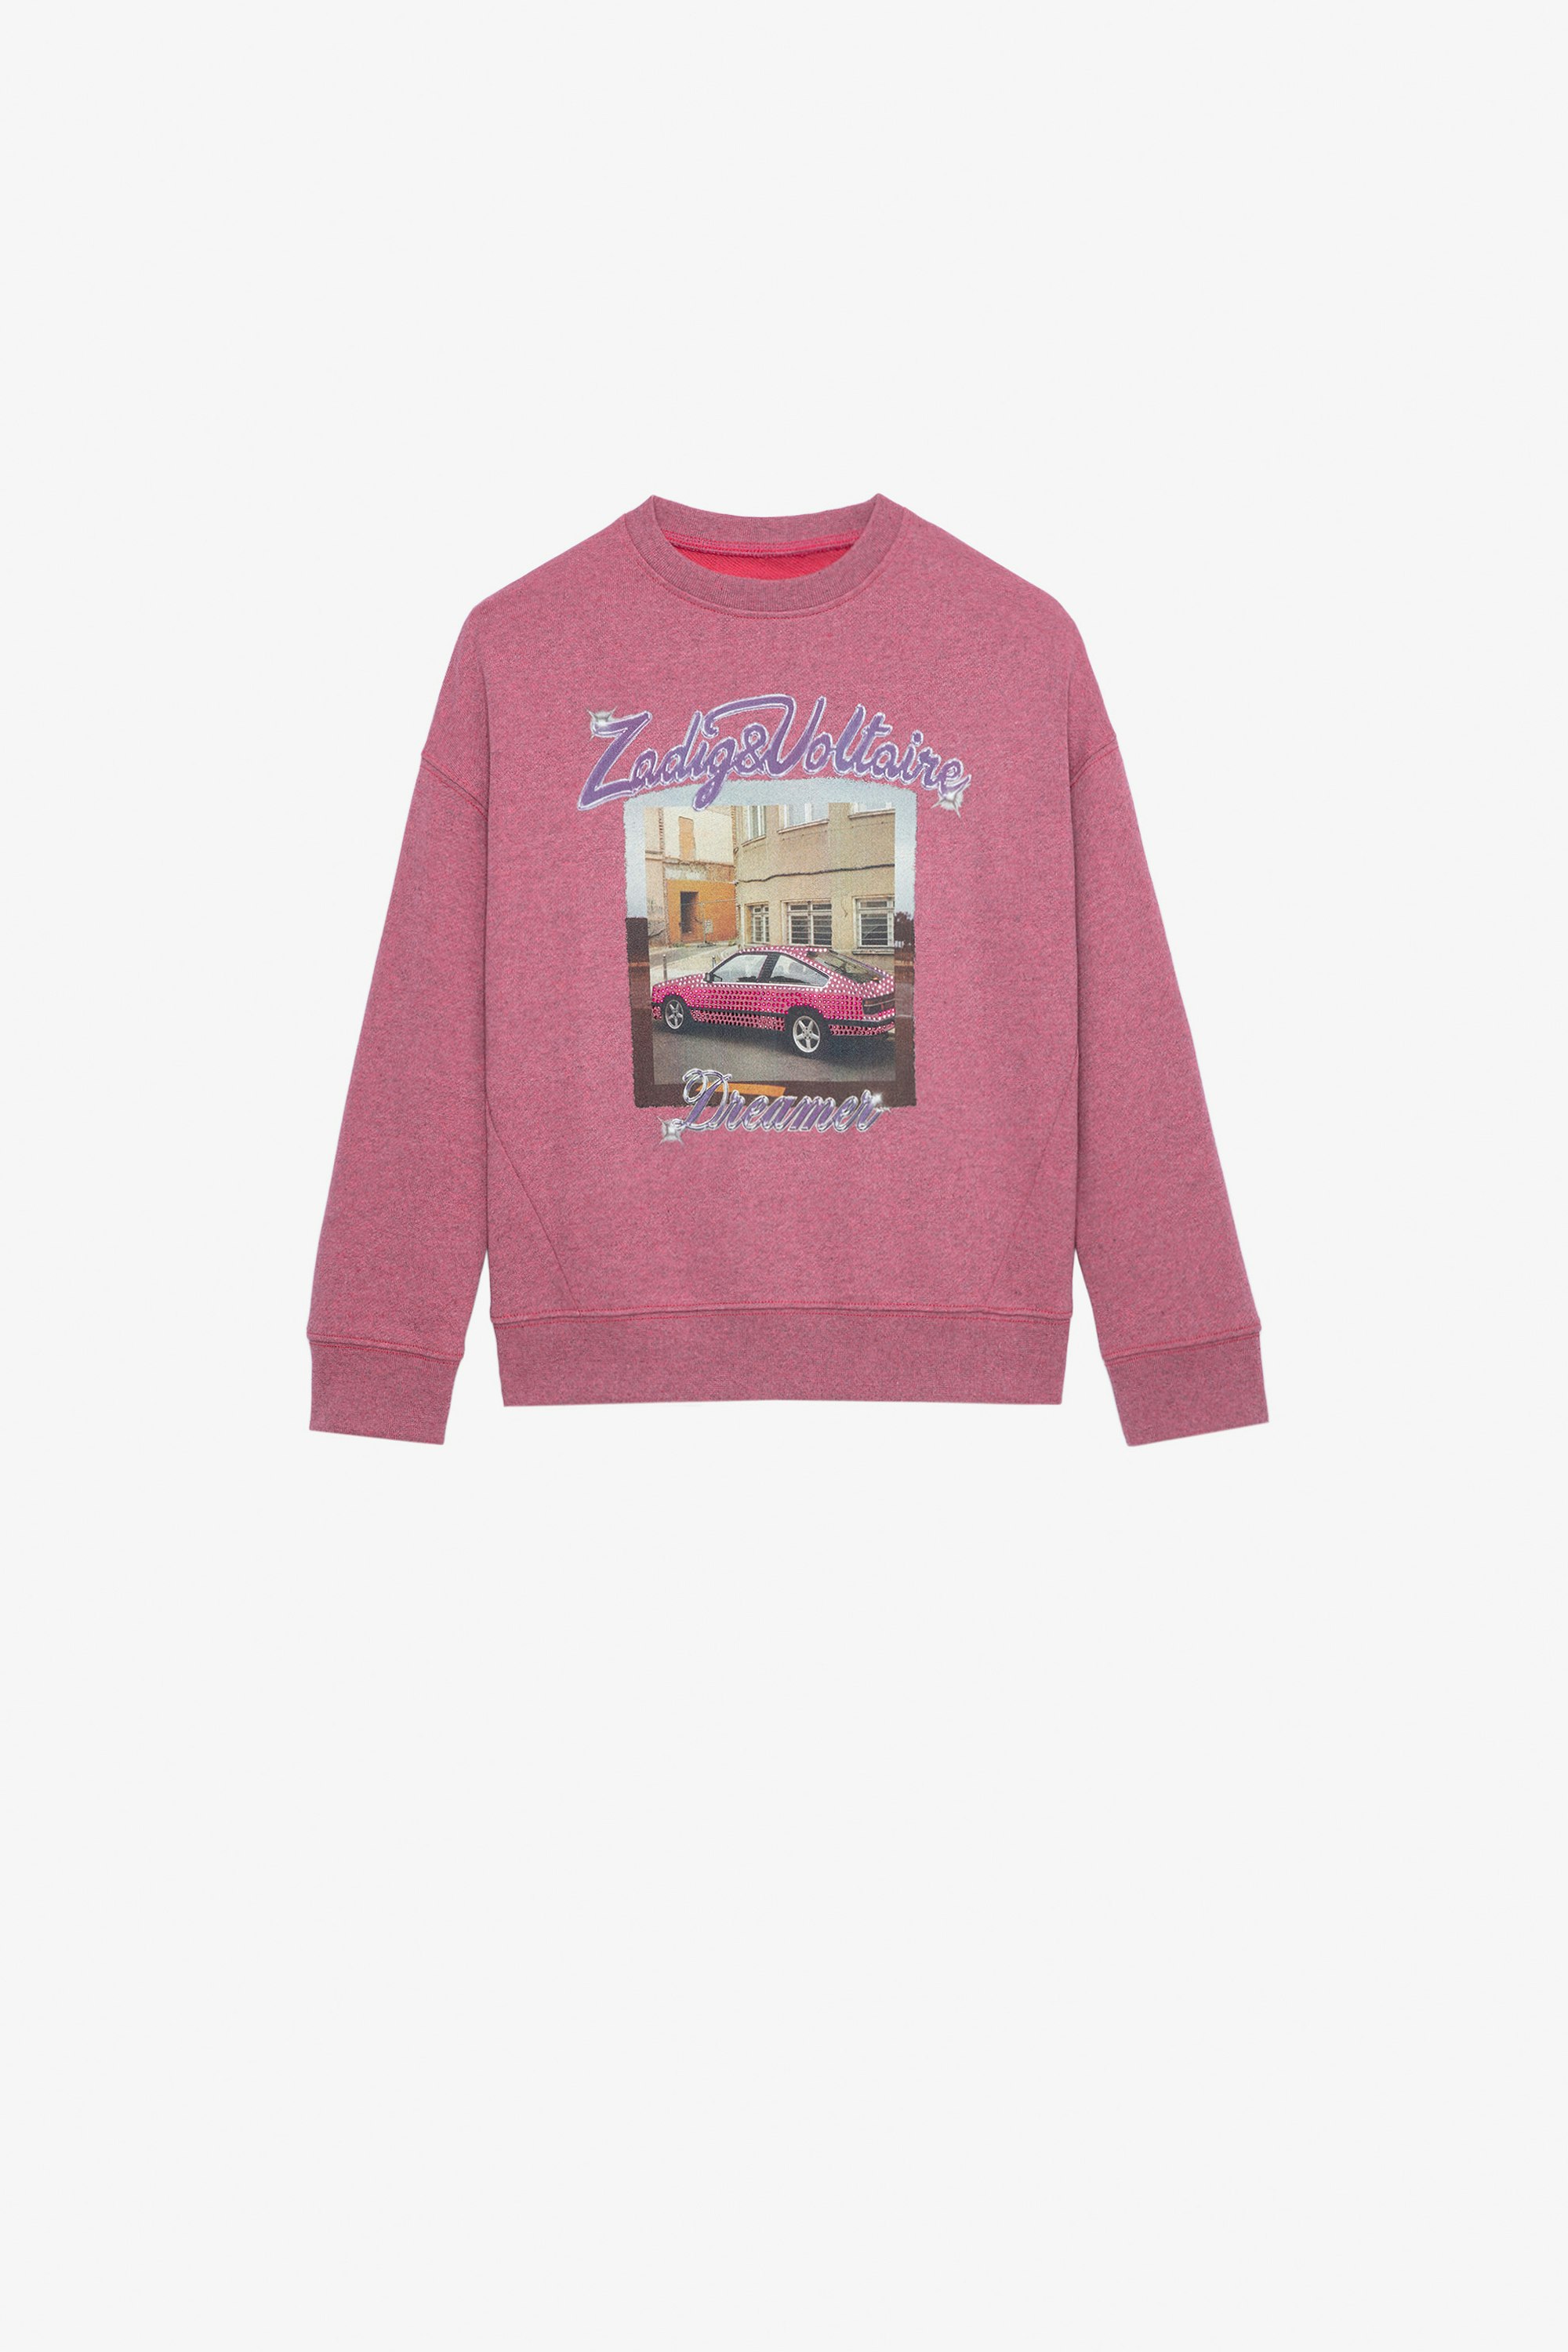 Liberty Girls’ Sweatshirt - Girls’ pink marl cotton fleece sweatshirt with illustration.